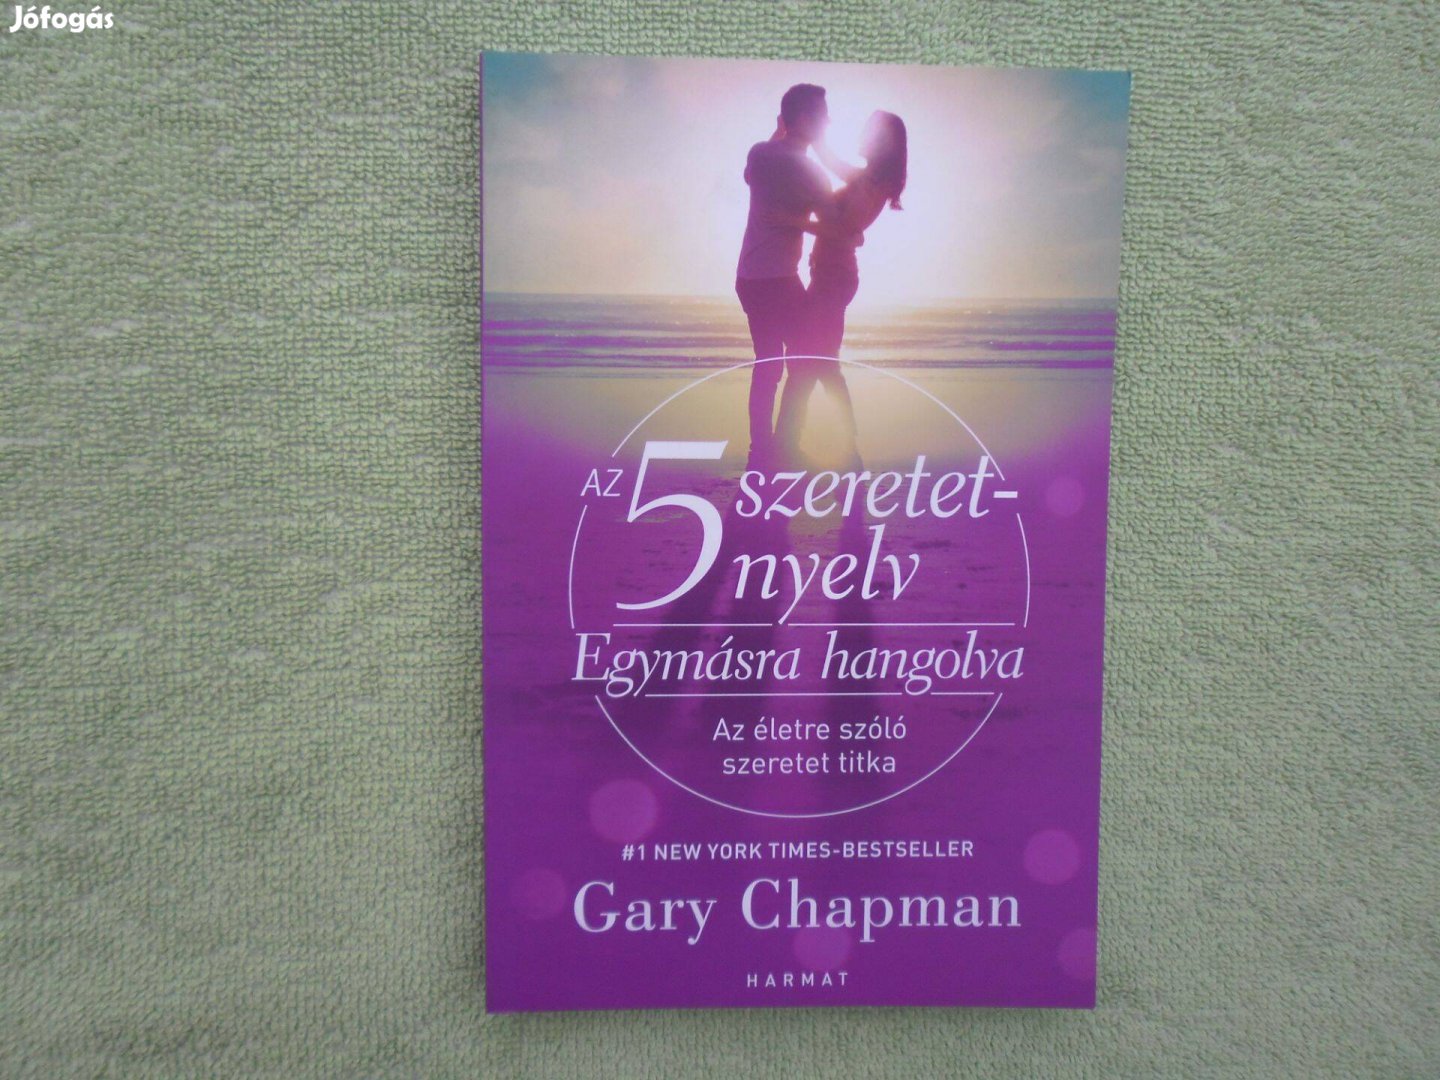 Gary Chapman: Az 5 szeretetnyelv - Egymásra hangolva